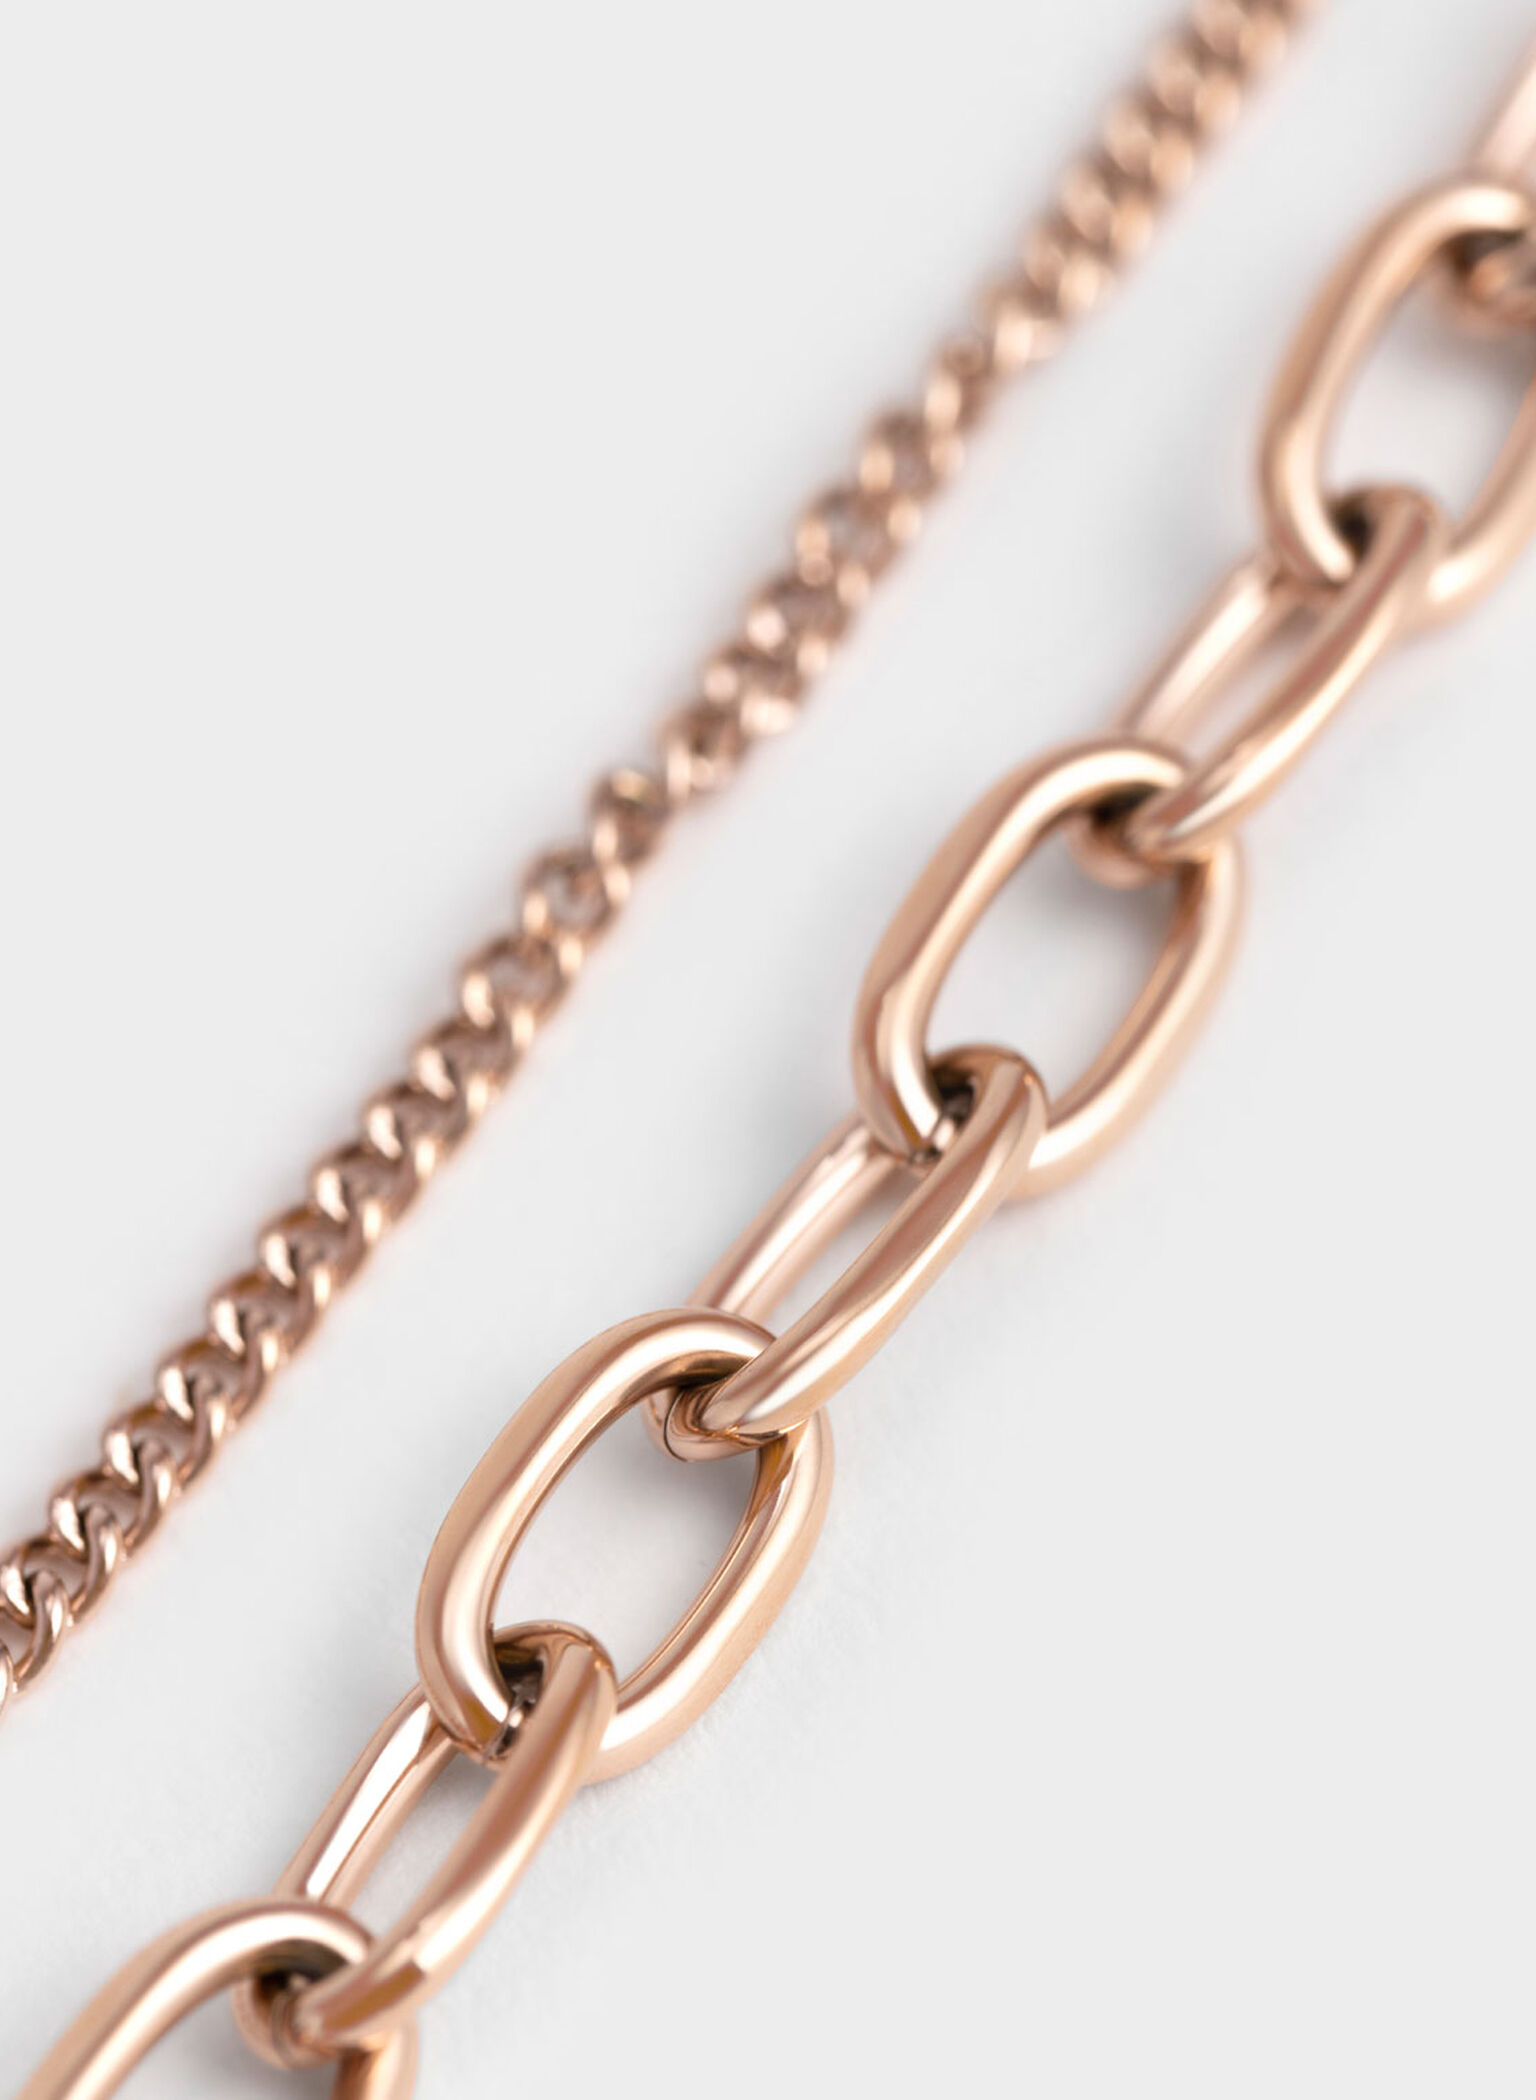 Double Chain Bracelet, Rose Gold, hi-res